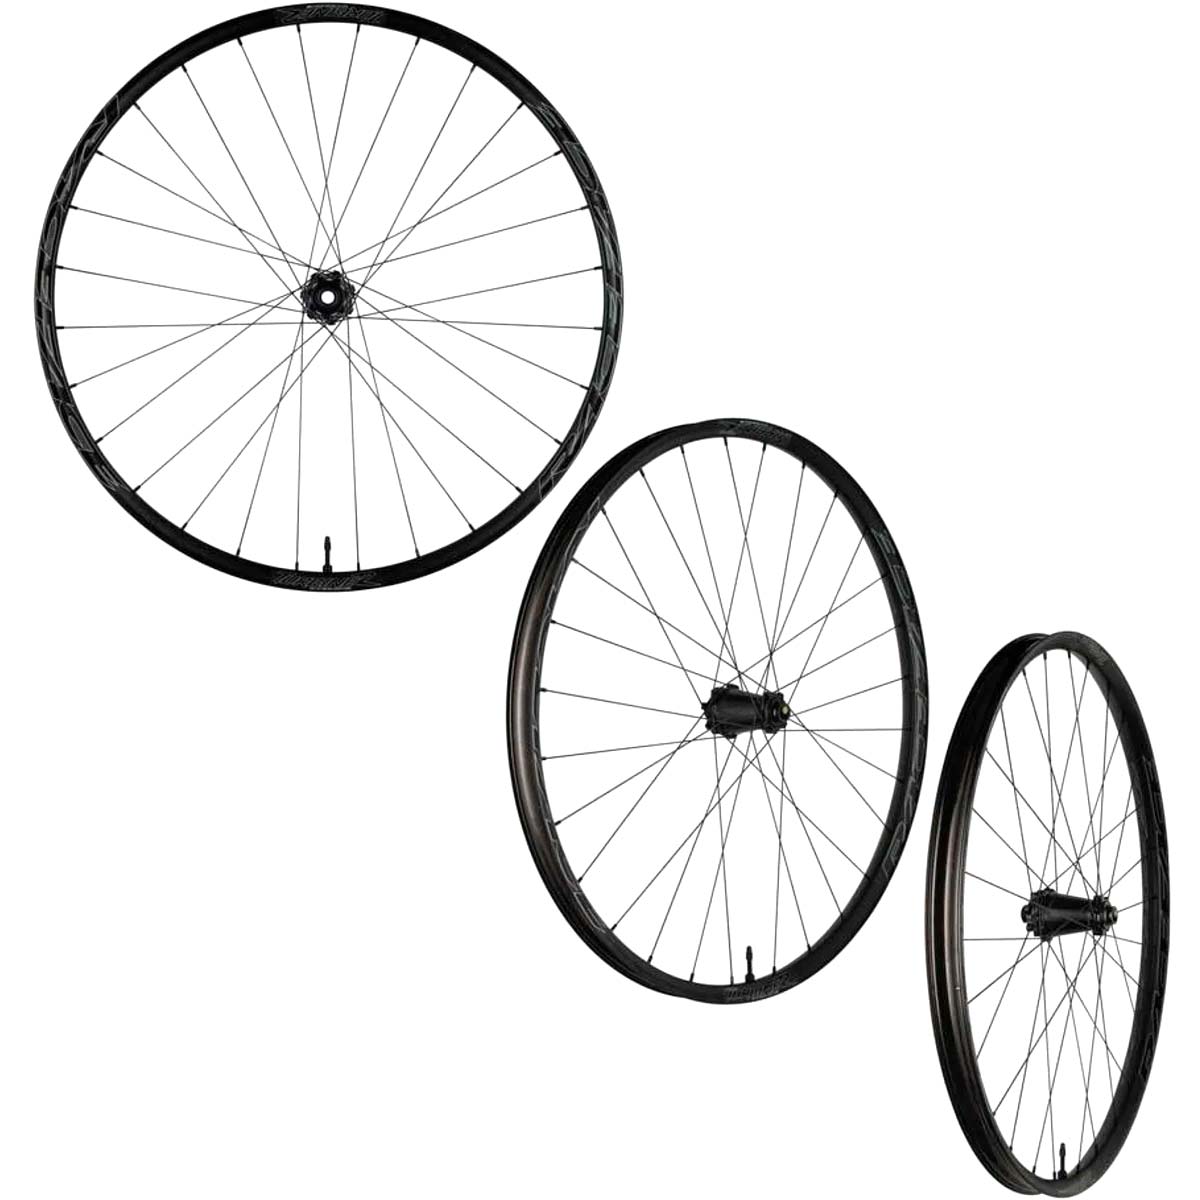 En TodoMountainBike: Race Face presenta las Turbine R 35, unas ruedas de aluminio de perfil ancho para bicis de Trail y Enduro